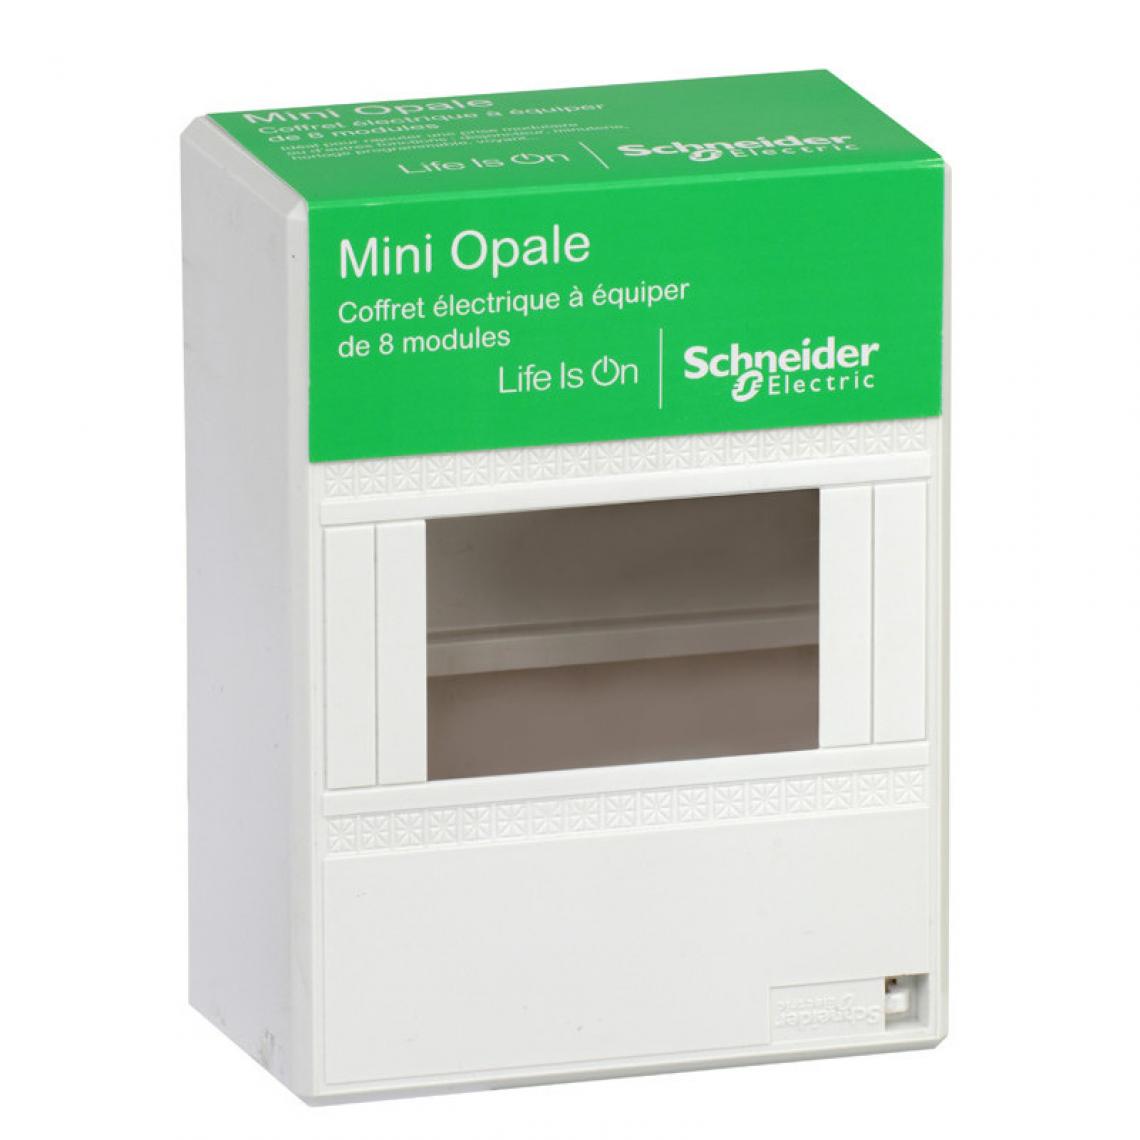 Schneider Electric - Coffret à équiper (Mini Opale) 8 modules Schneider - Blanc - Tableaux prééquipés